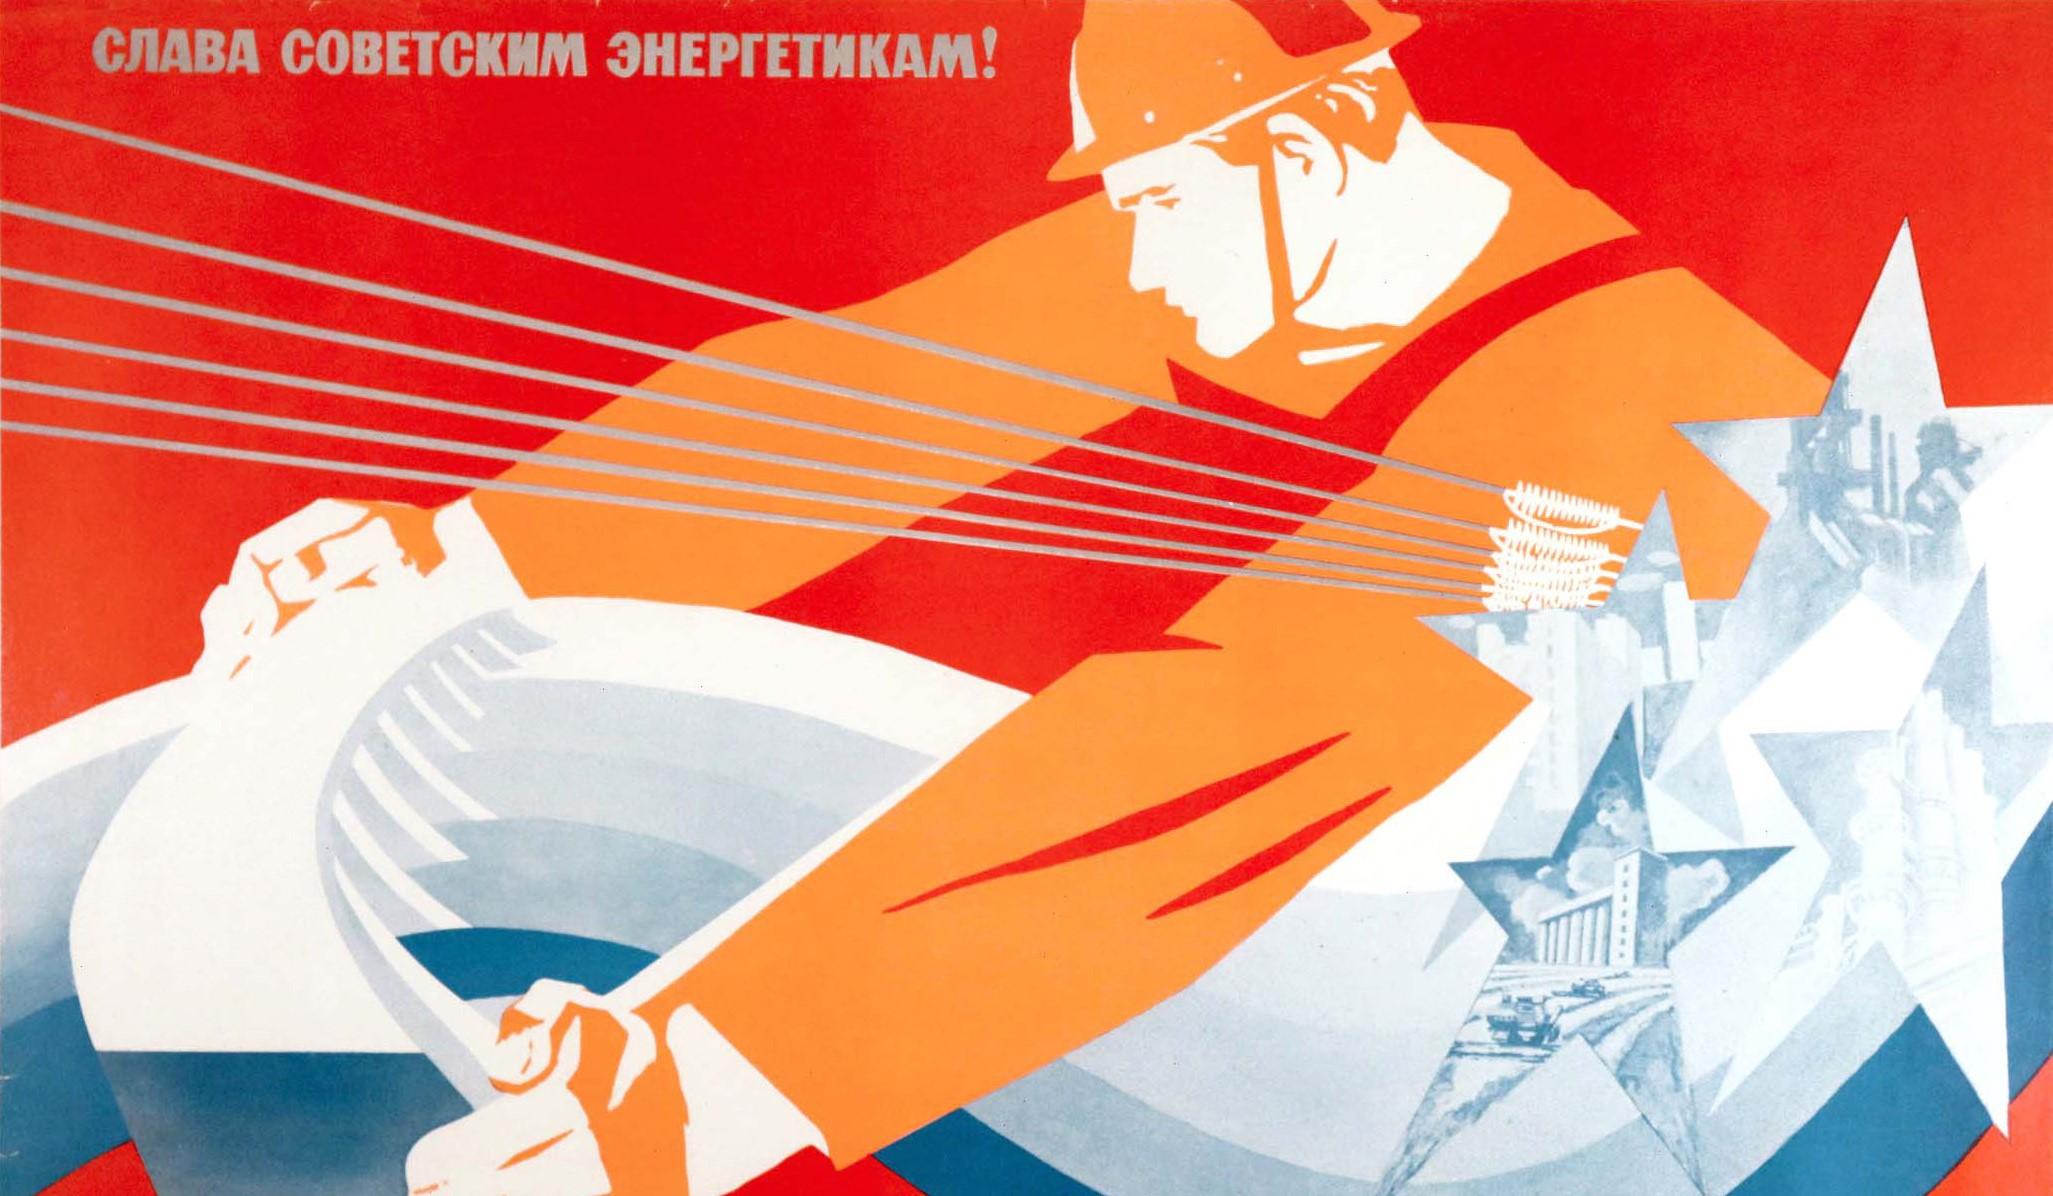 Originales altes Propagandaplakat der UdSSR - Ruhm für die sowjetischen Machtingenieure! Billionen Kilowattstunden pro Jahr! - mit einer dynamischen Illustration eines Ingenieurs in Uniform, der einen Wasserkraftdamm hält, über dem diagonal